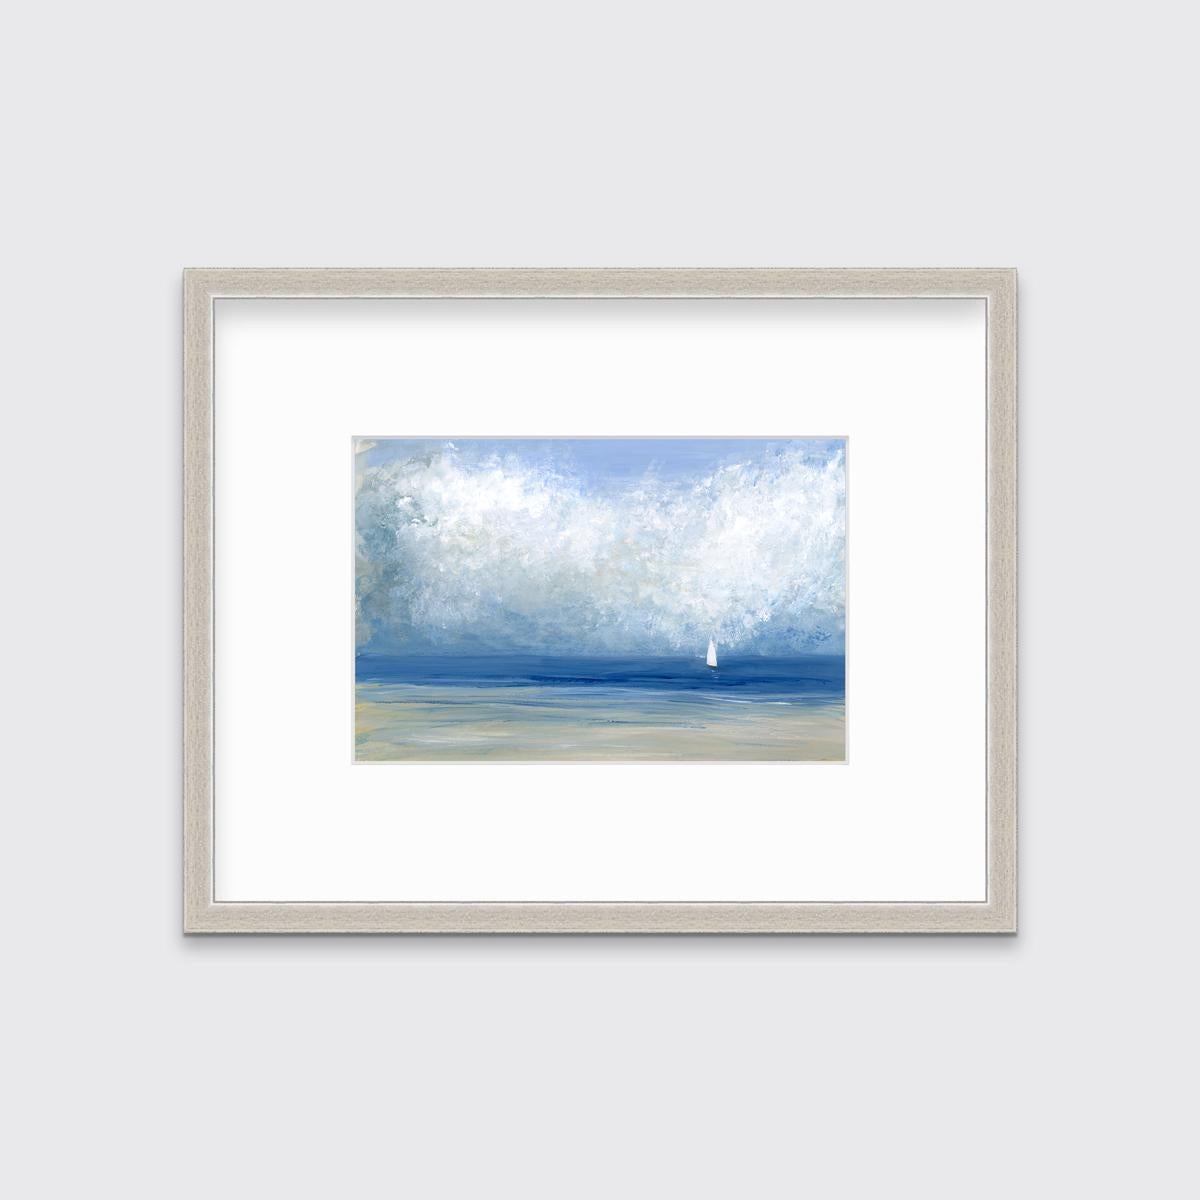 Cette estampe de paysage marin contemporain en édition limitée de A.I.C. Aldo présente une palette côtière fraîche. Elle représente une scène côtière légèrement abstraite avec un ciel bleu clair, d'épais nuages blancs abstraits et un petit voilier